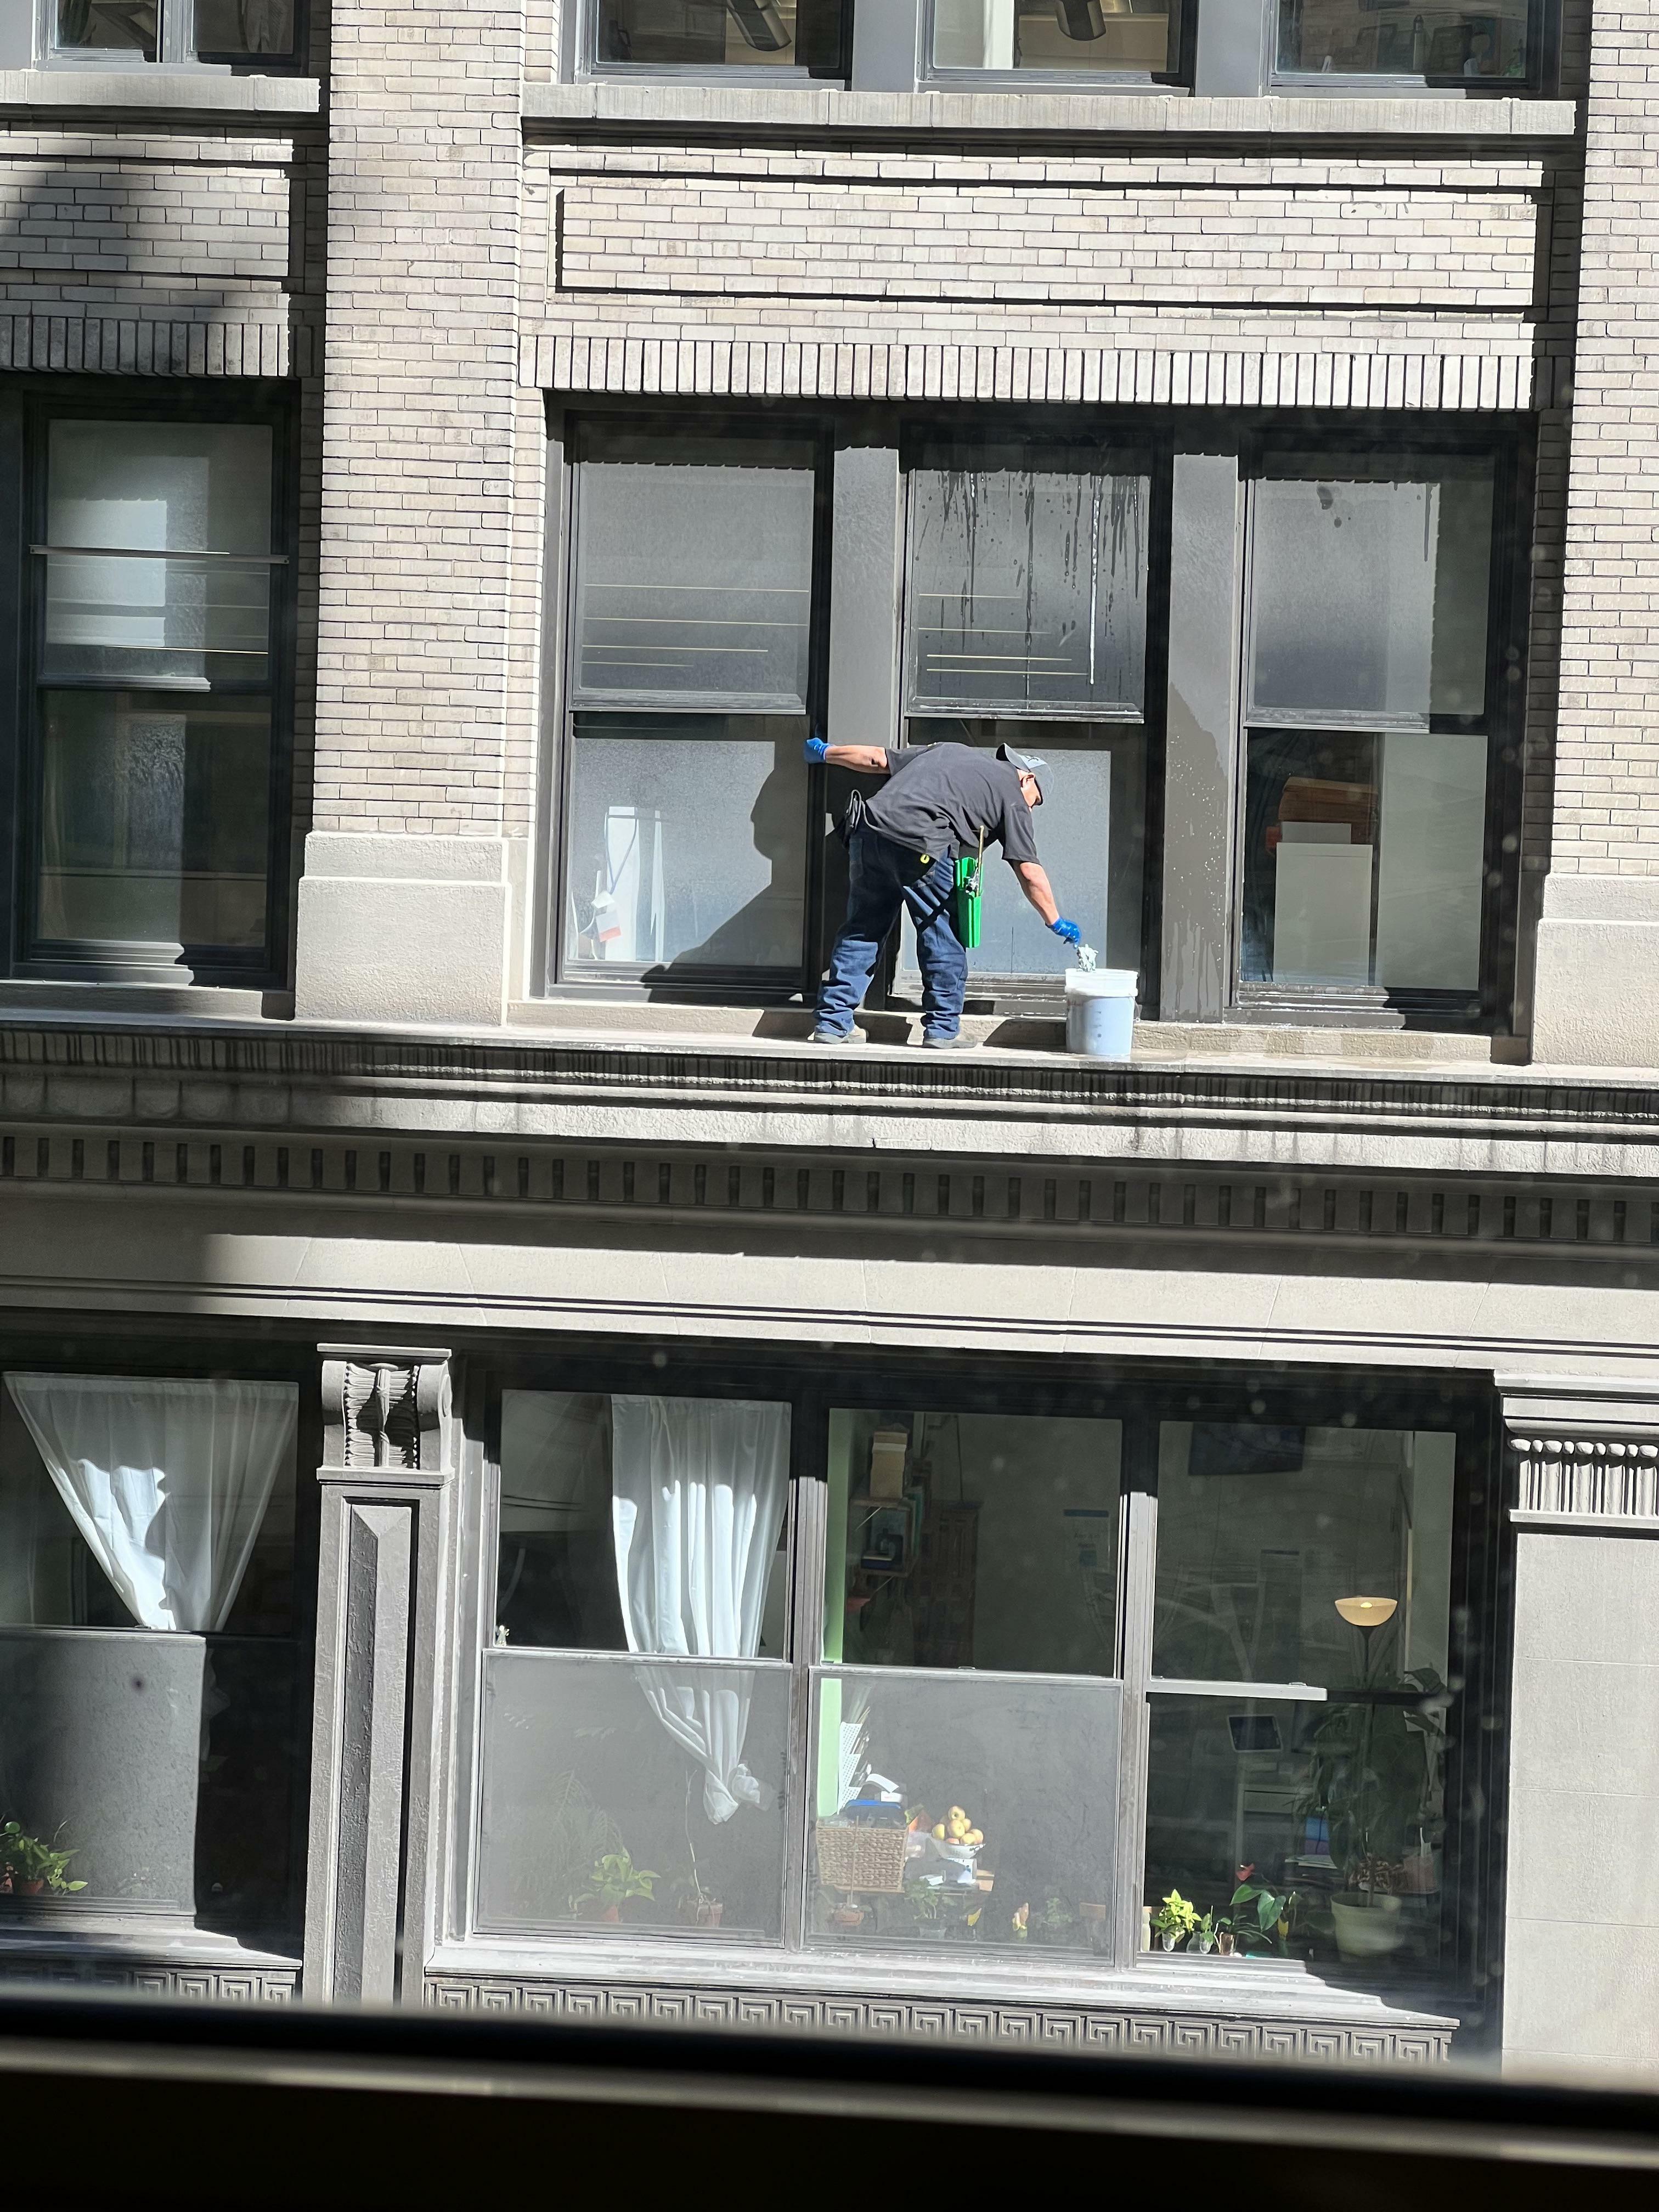 Les laveurs de vitres sont de l'autre côté de la rue. Je suis au 5ème étage. nyc